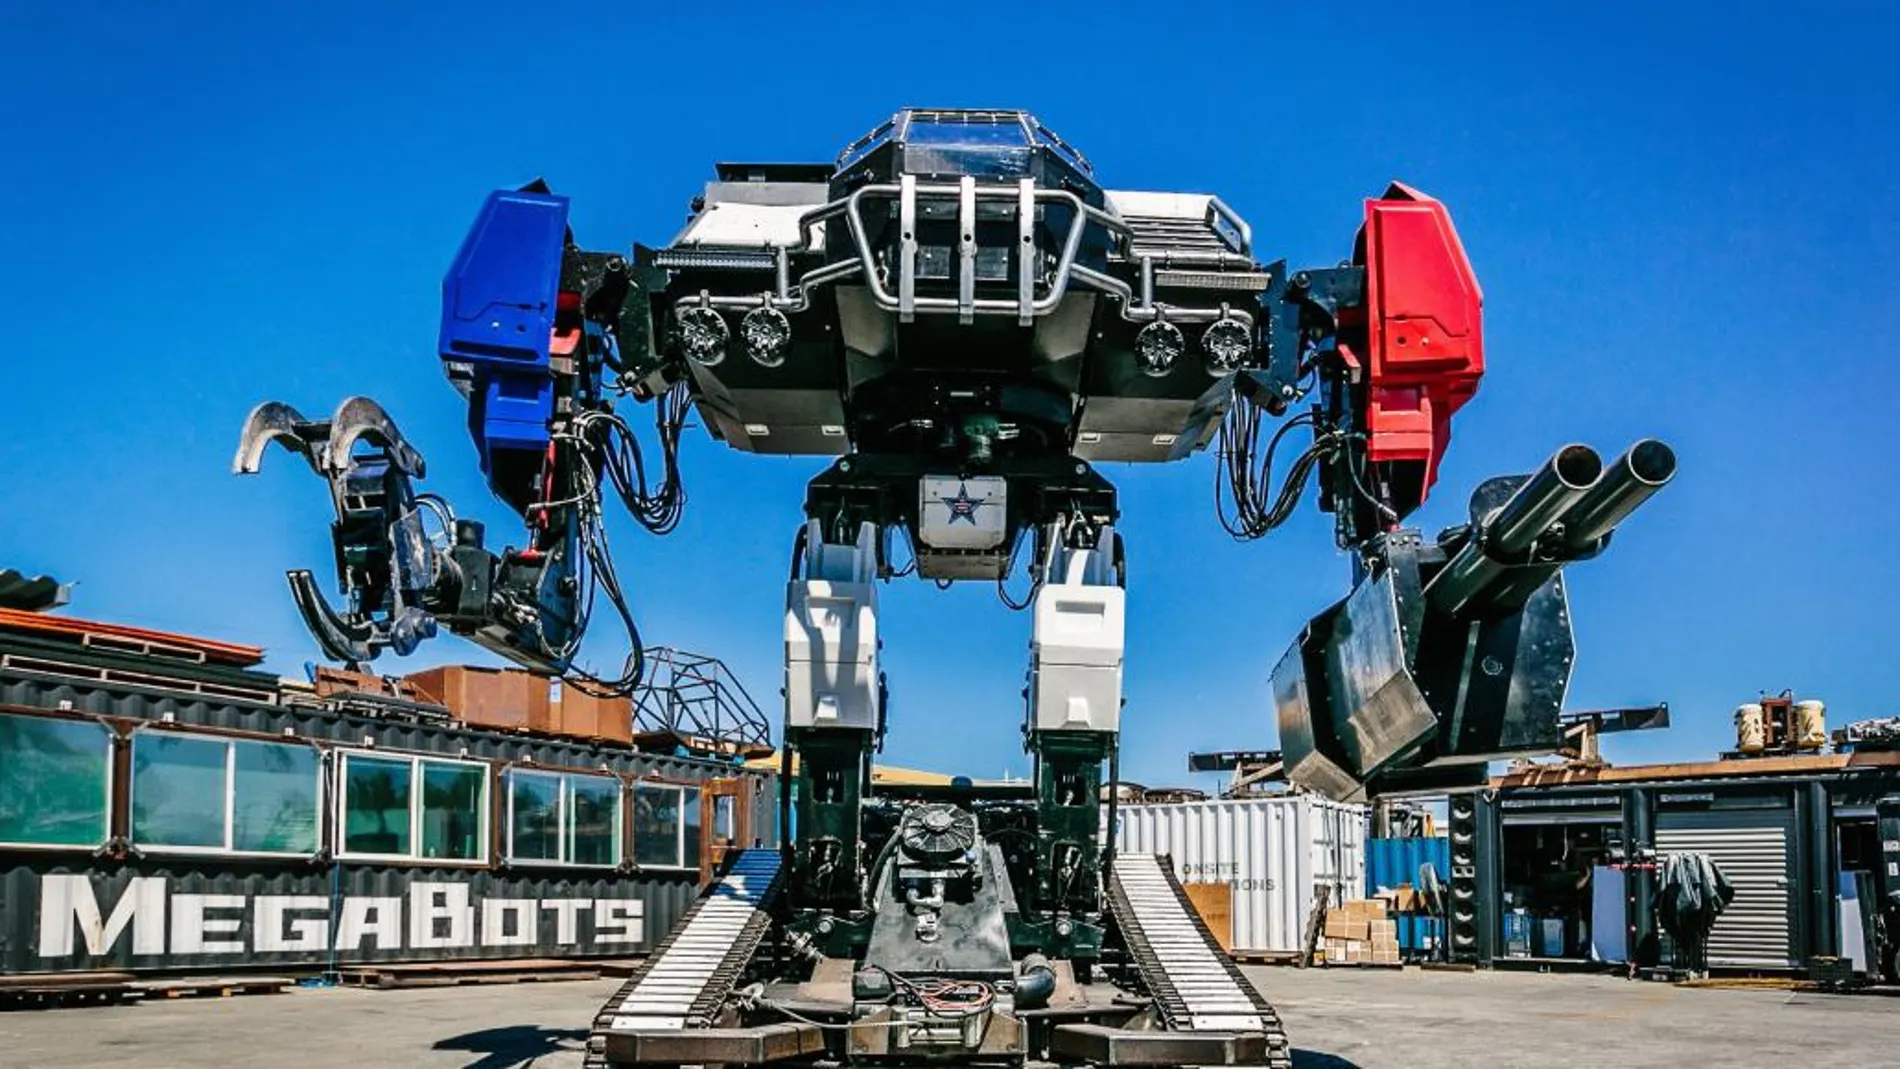 Fotografía cedida por MegaBots, de Eagle Prime, un robot de la empresa estadounidense MegaBots que pesa 12 toneladas, mide 4,8 metros de altura y tiene una capacidad de 430 caballos de potencia y participó en un combate a muerte de robots